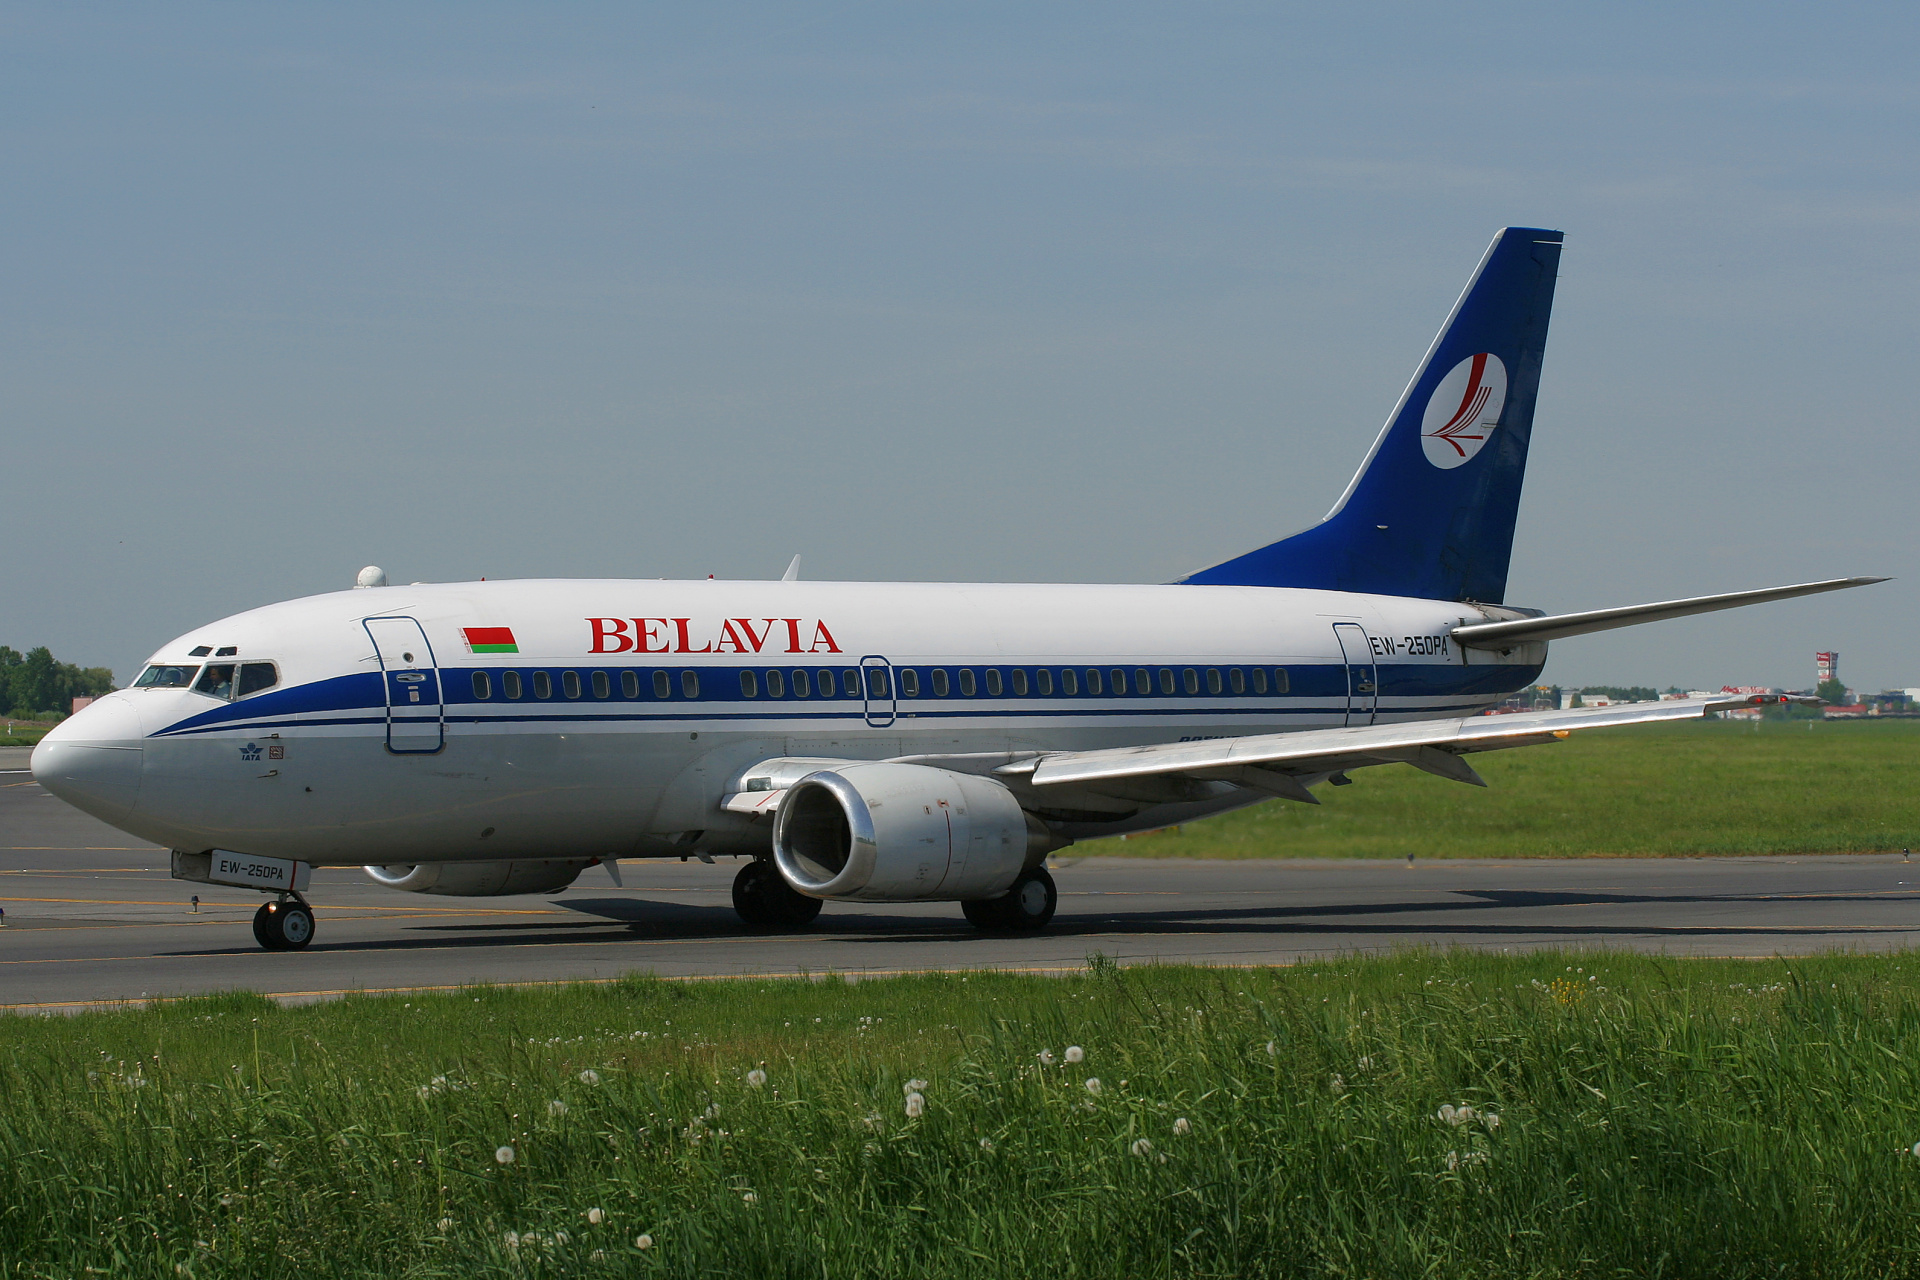 EW-250PA (Aircraft » EPWA Spotting » Boeing 737-500 » Belavia)